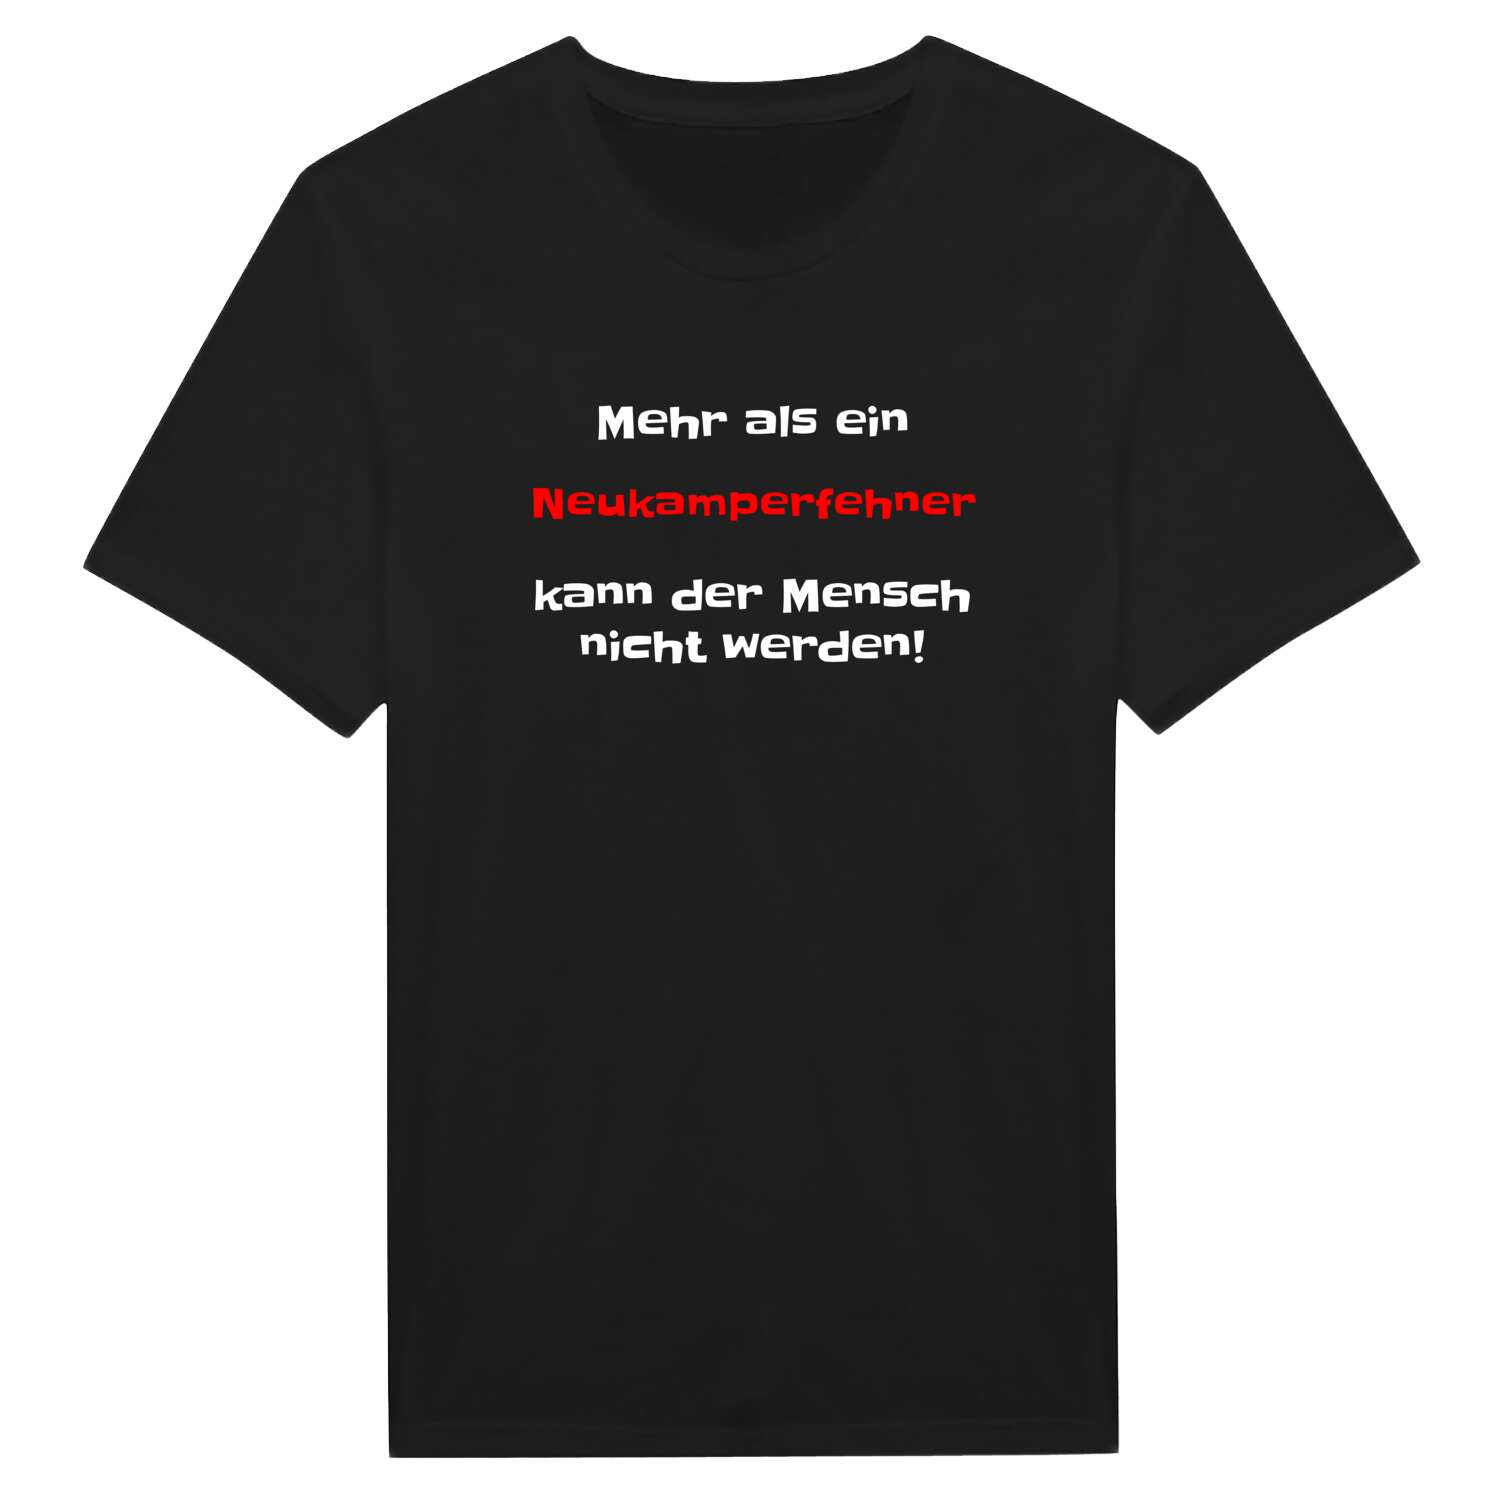 Neukamperfehn T-Shirt »Mehr als ein«